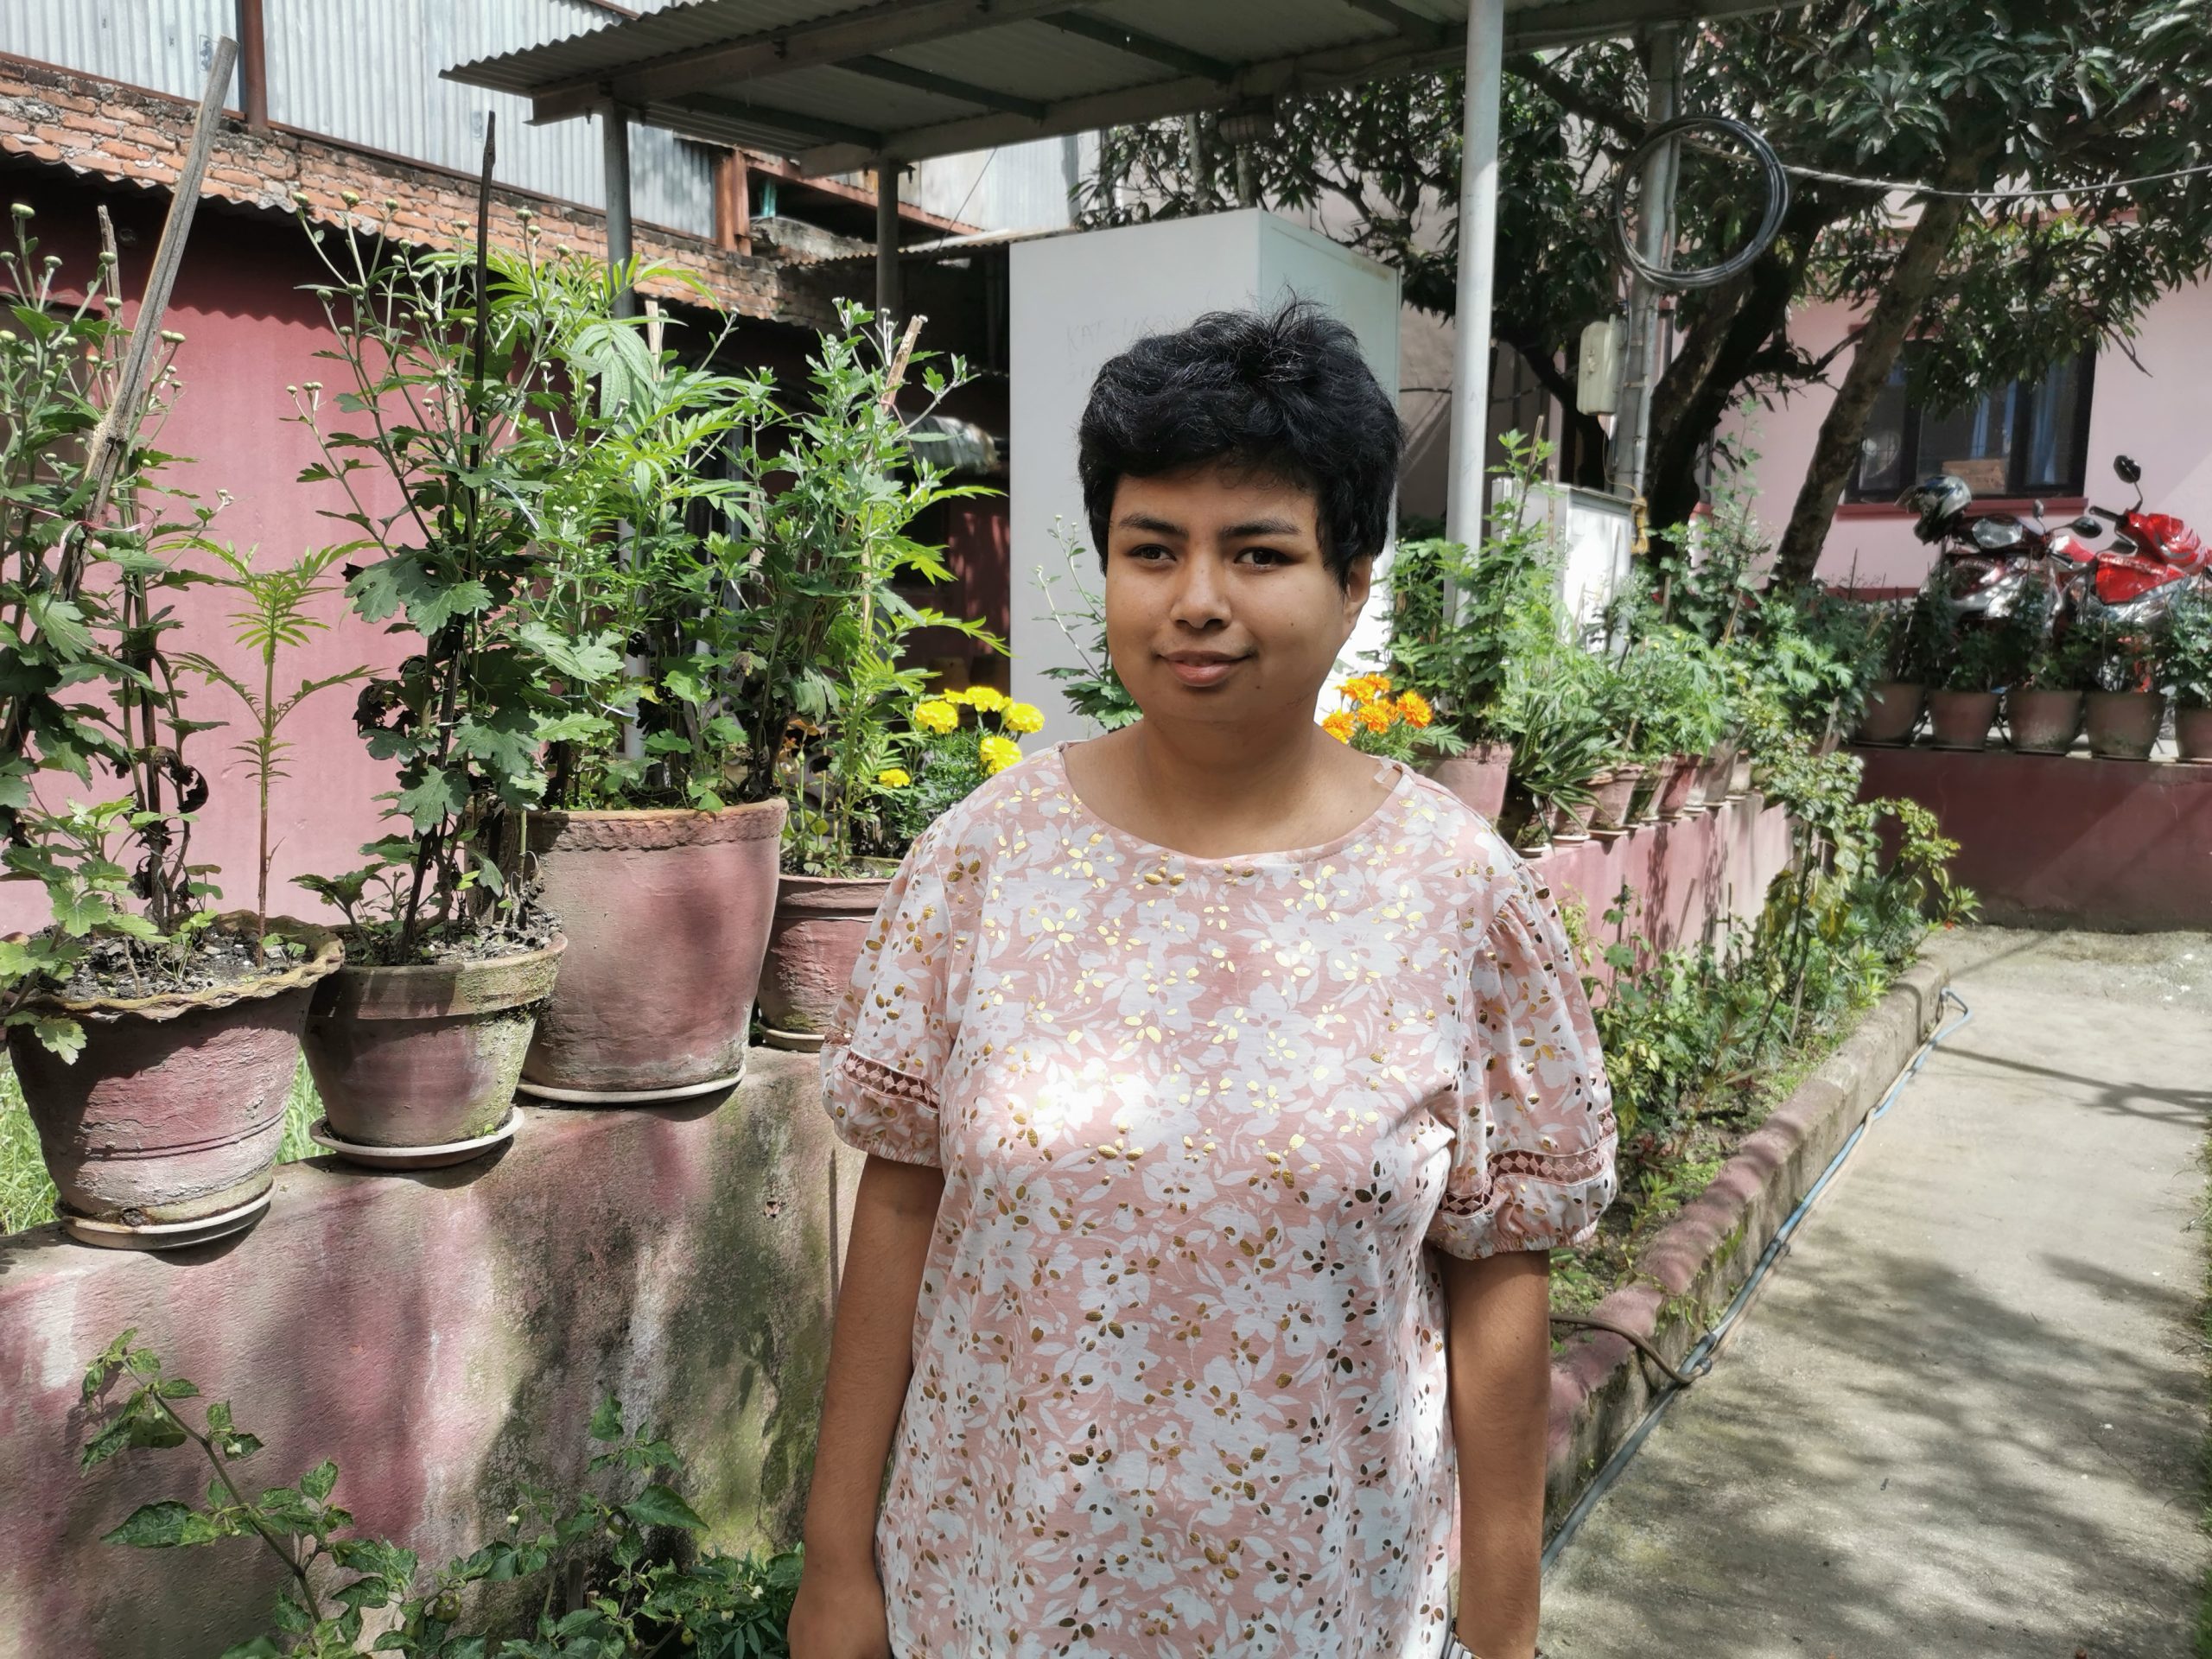 Ayushma står i en trädgård med gröna krukväxter bakom sig, hon har rosa tröja på sig och kort svart hår